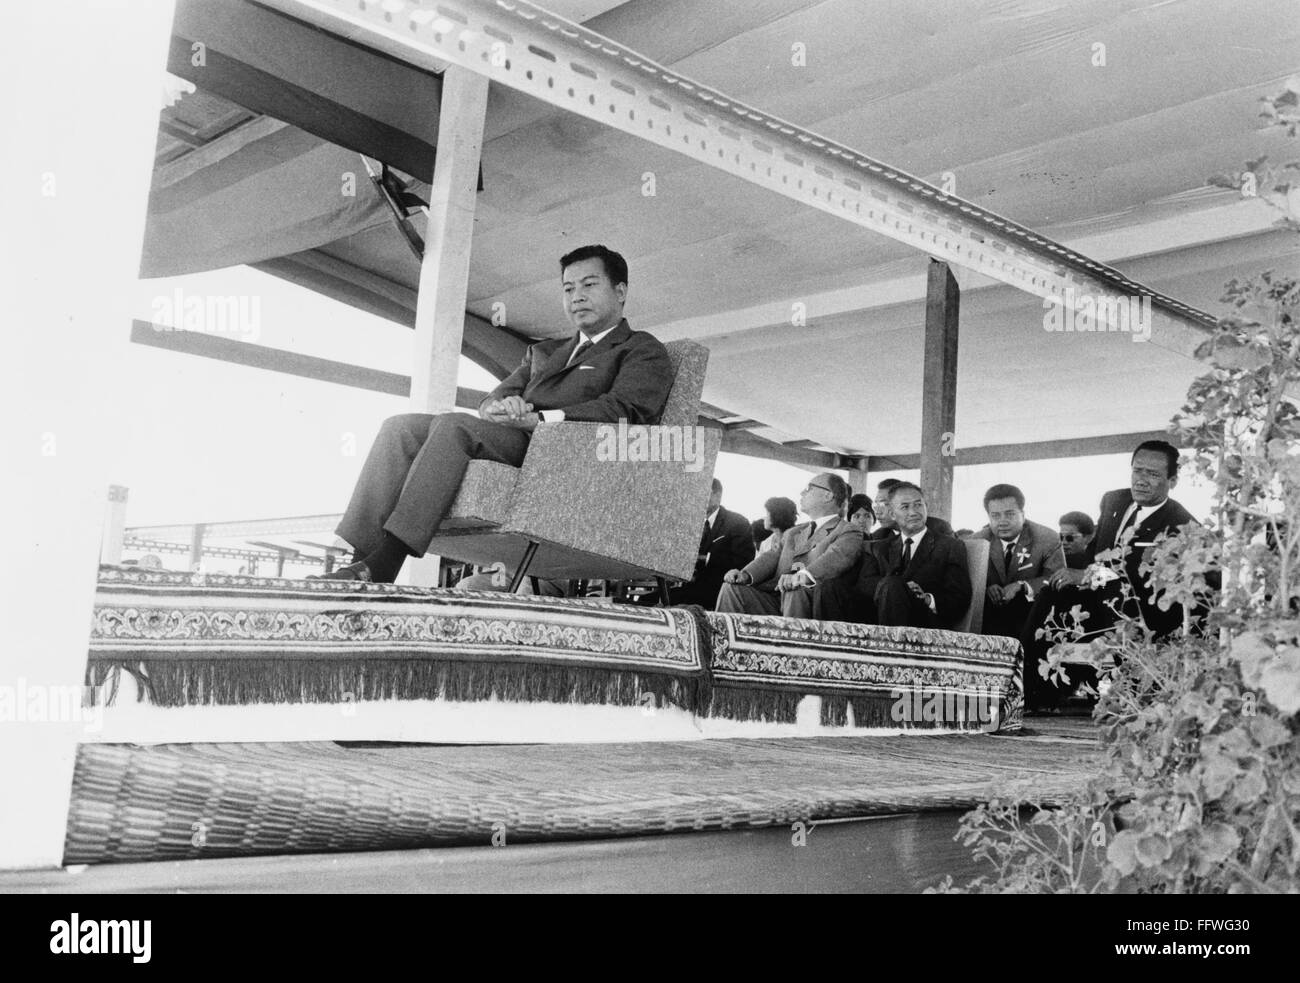 NORODOM SIHANOUK (1922- ). NCambodian /chef de l'Etat. Le Prince Sihanouk assistant à l'inauguration d'une infirmerie dans un village cambodgien, 17 décembre 1963. Photographié par Sol W. Sanders. Banque D'Images